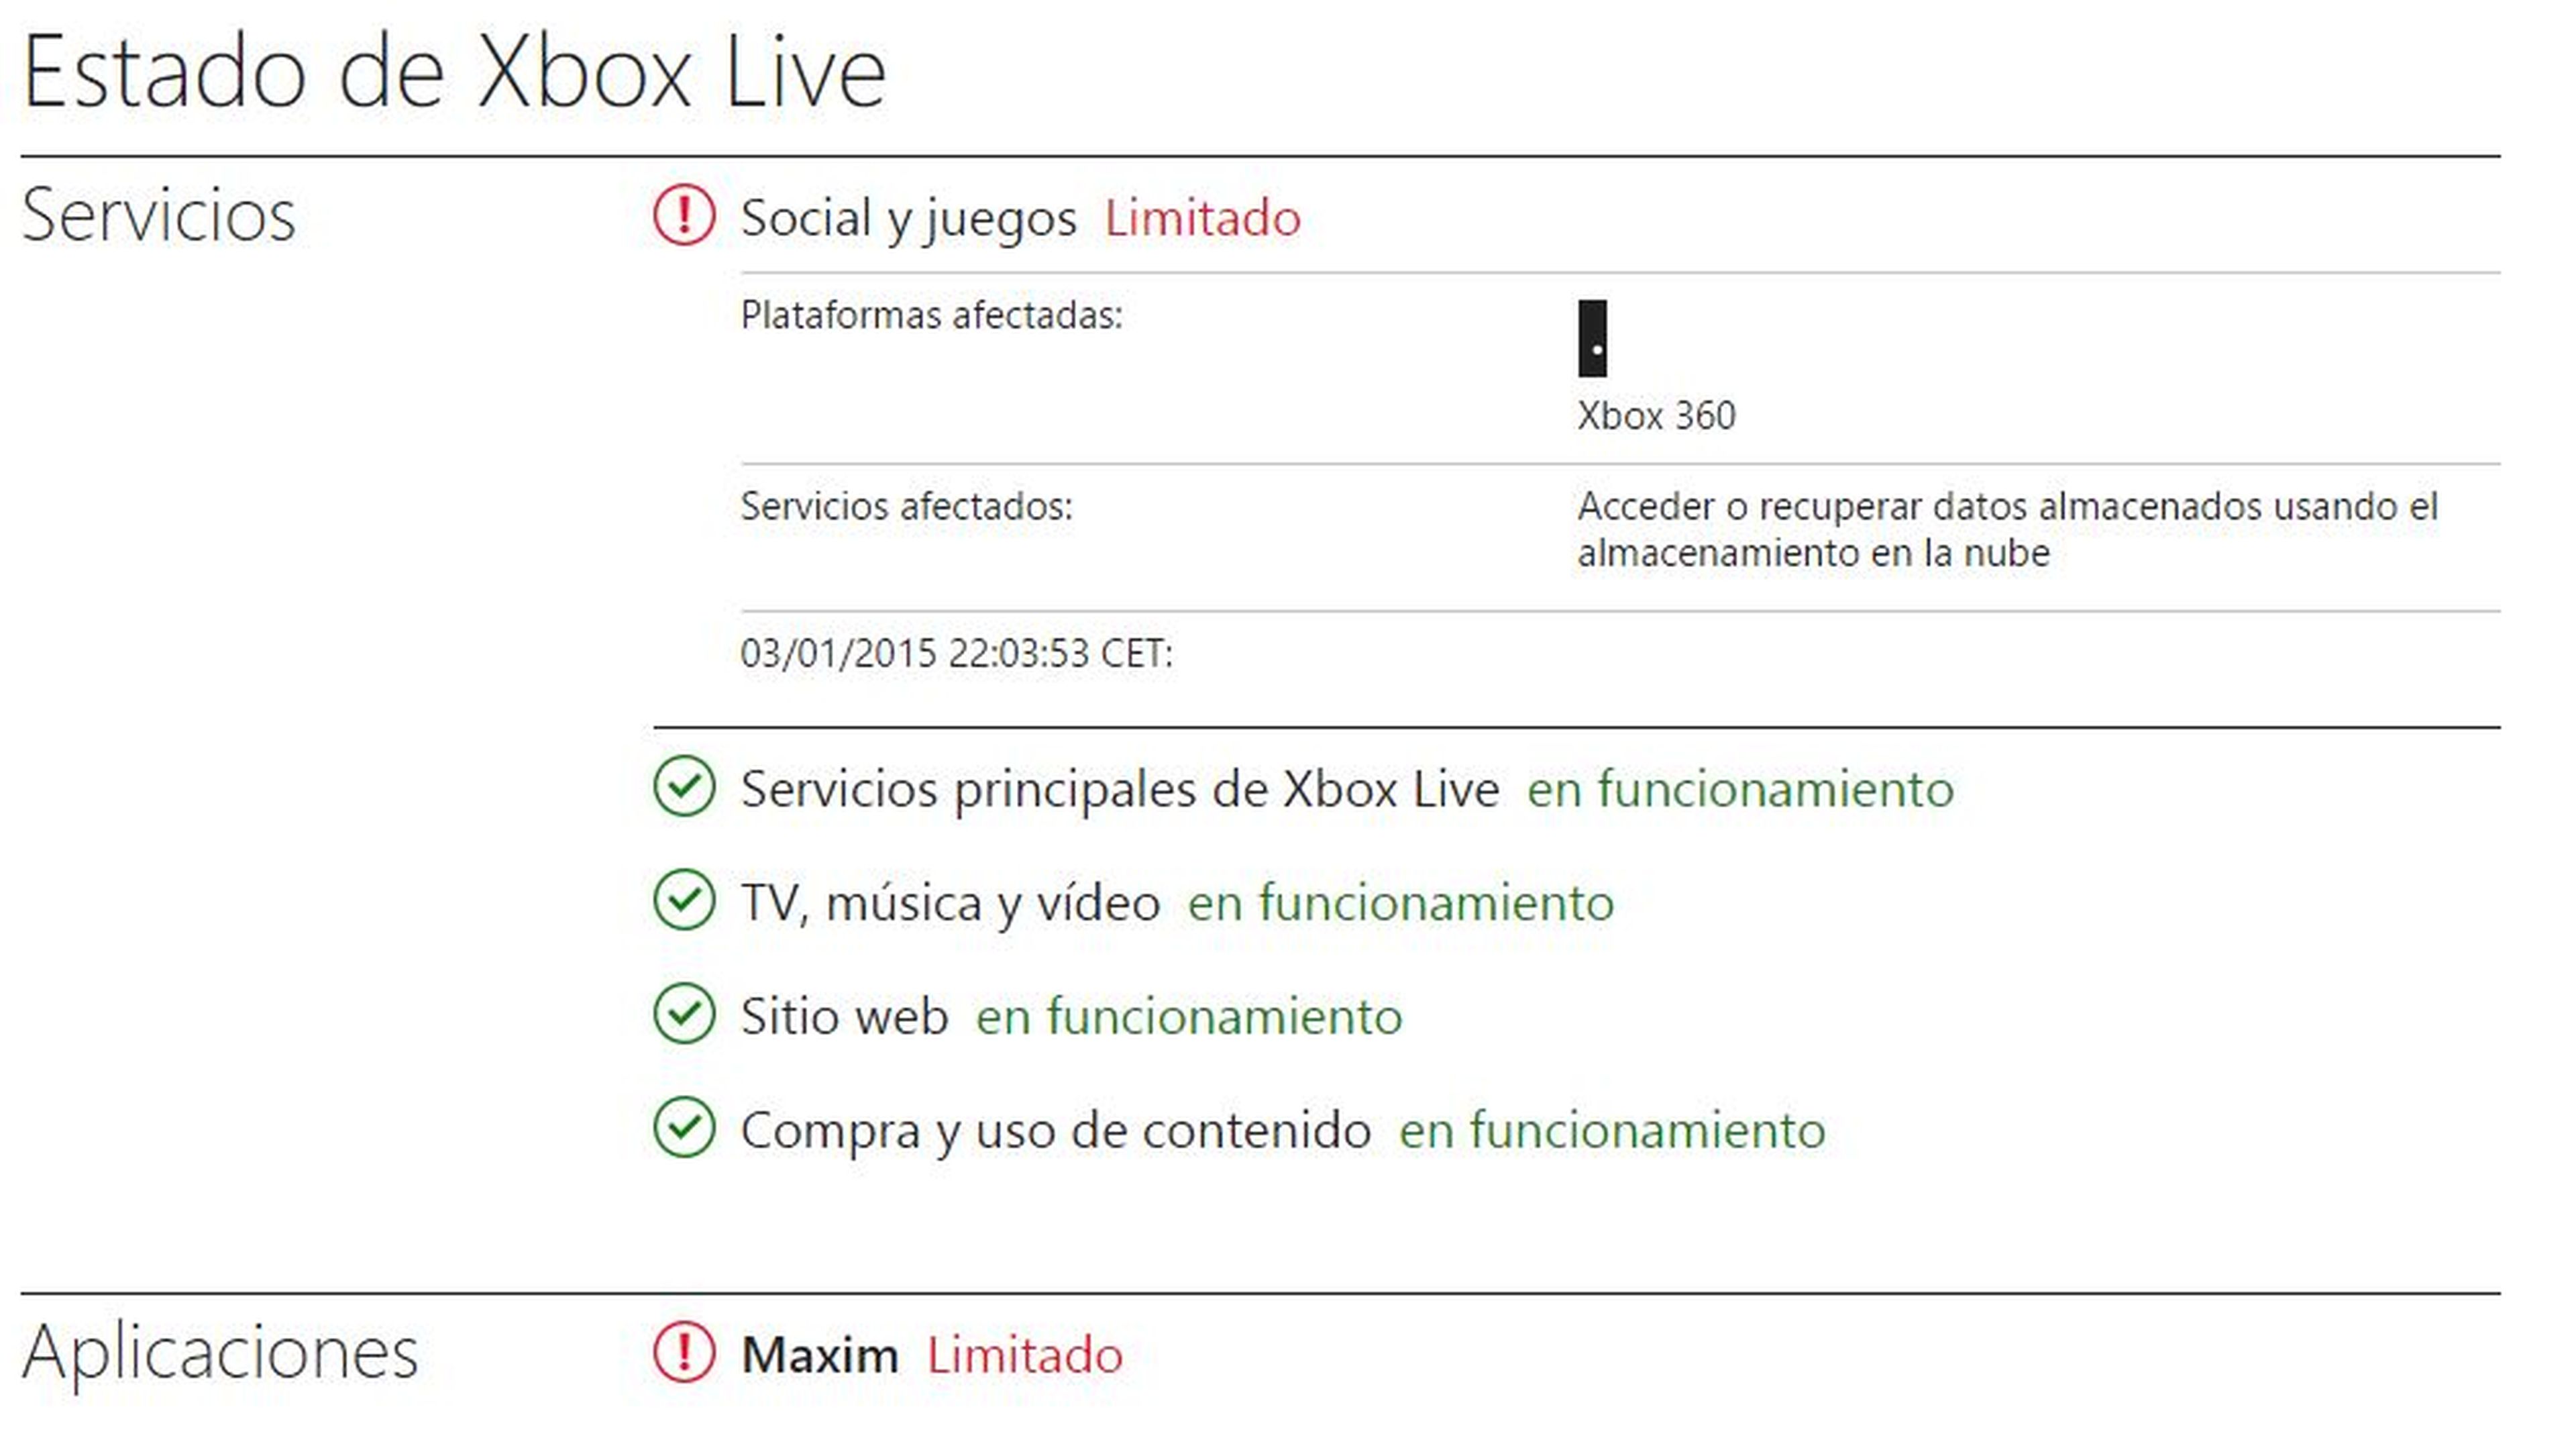 Los problemas de Xbox Live solo afectan a algunos accesos de datos en la nube